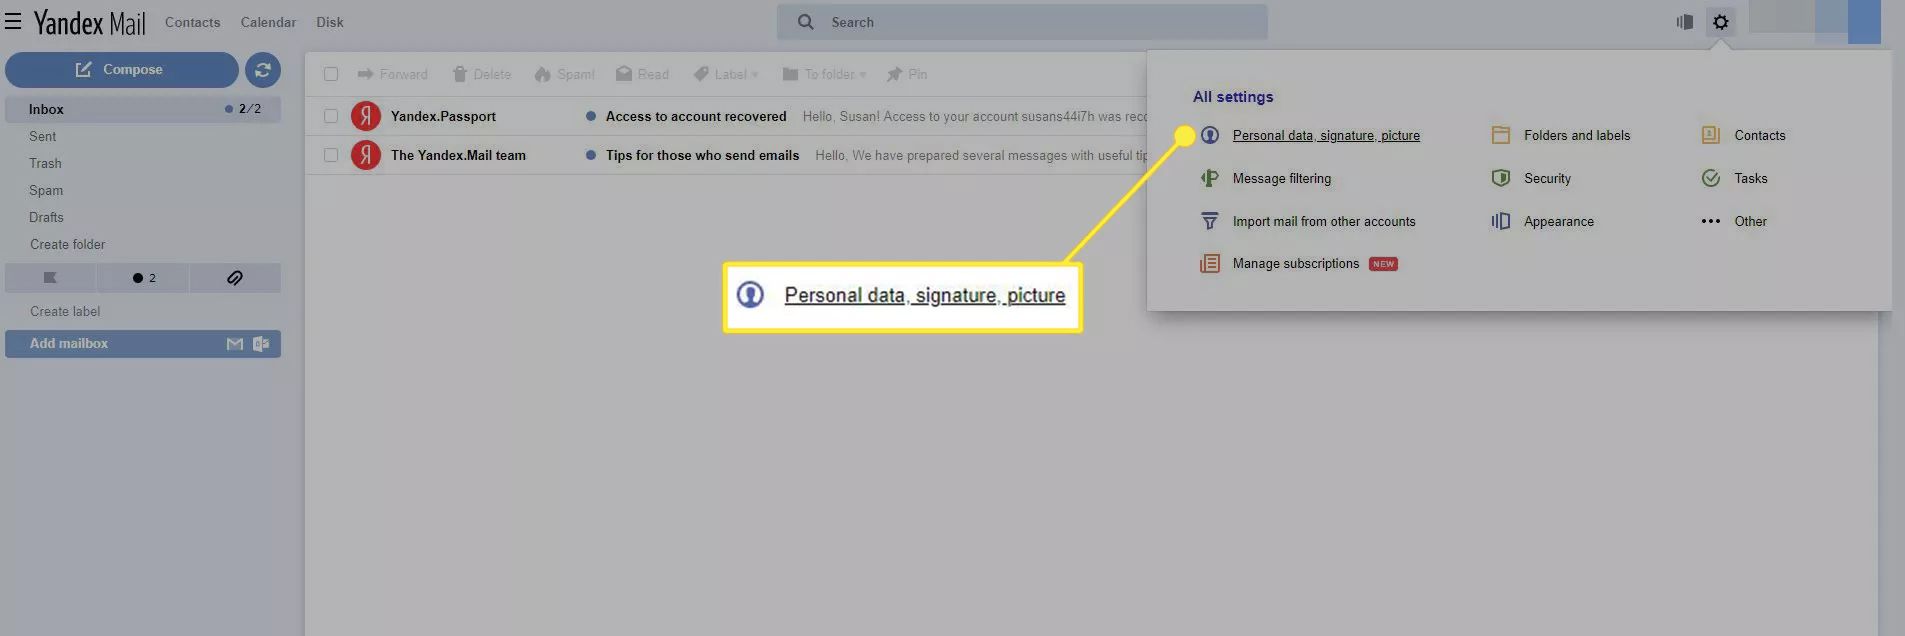 Yandex Mail-appen med 'Personliga data, signatur, bild' markerad